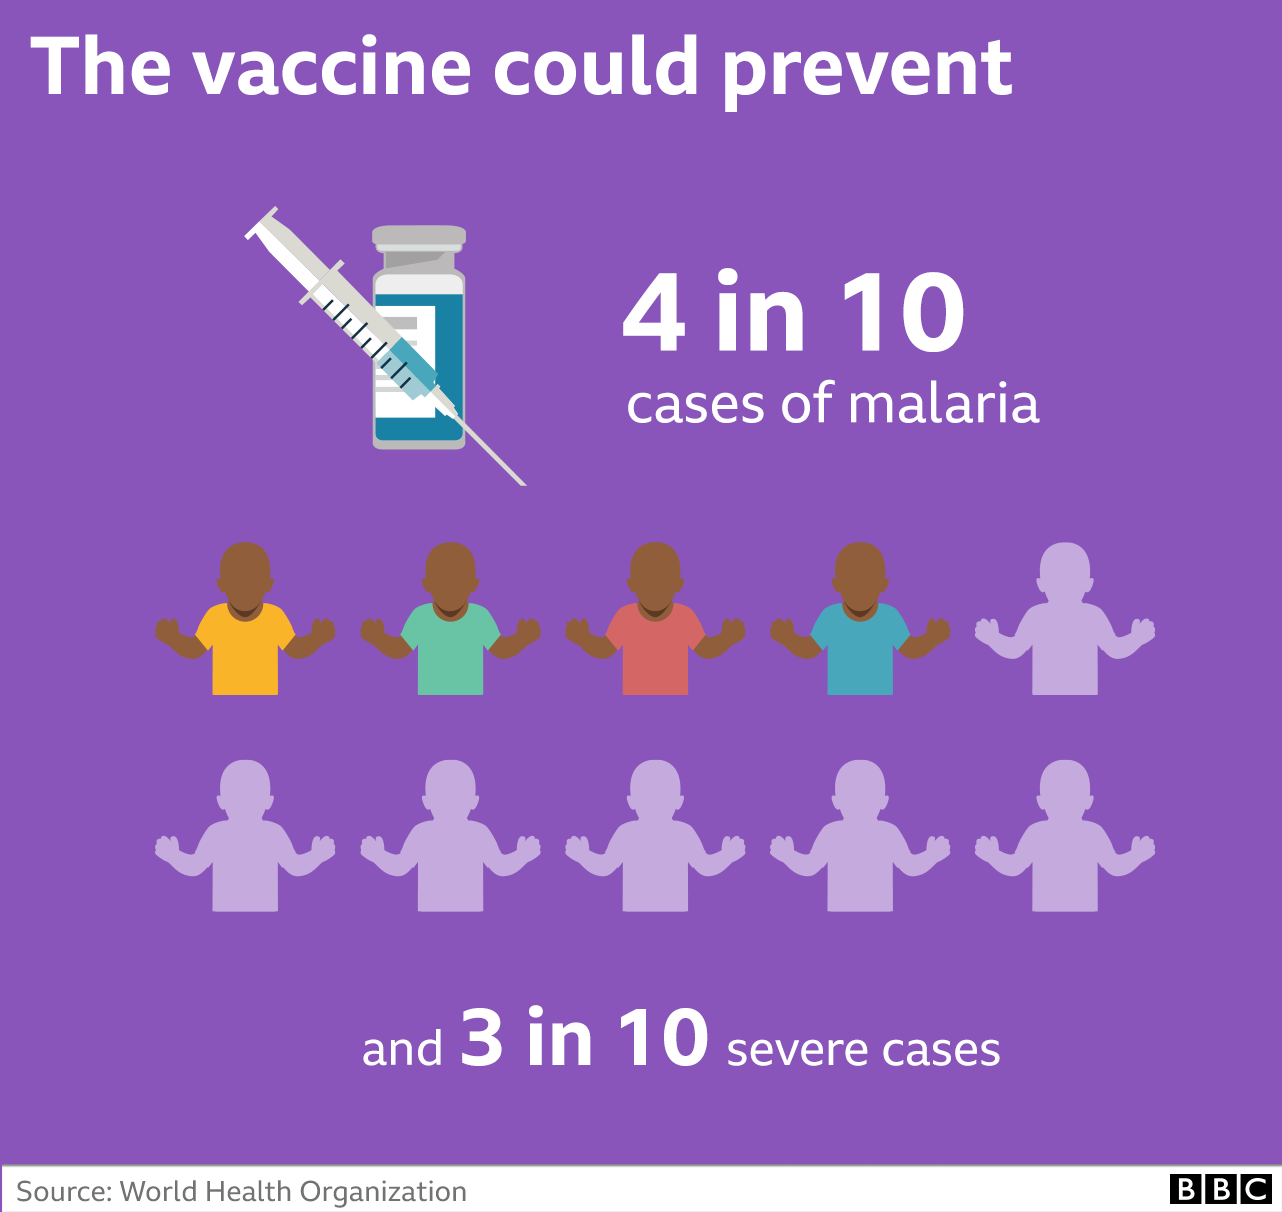 Vaccine could prevent 4 in 10 malaria cases